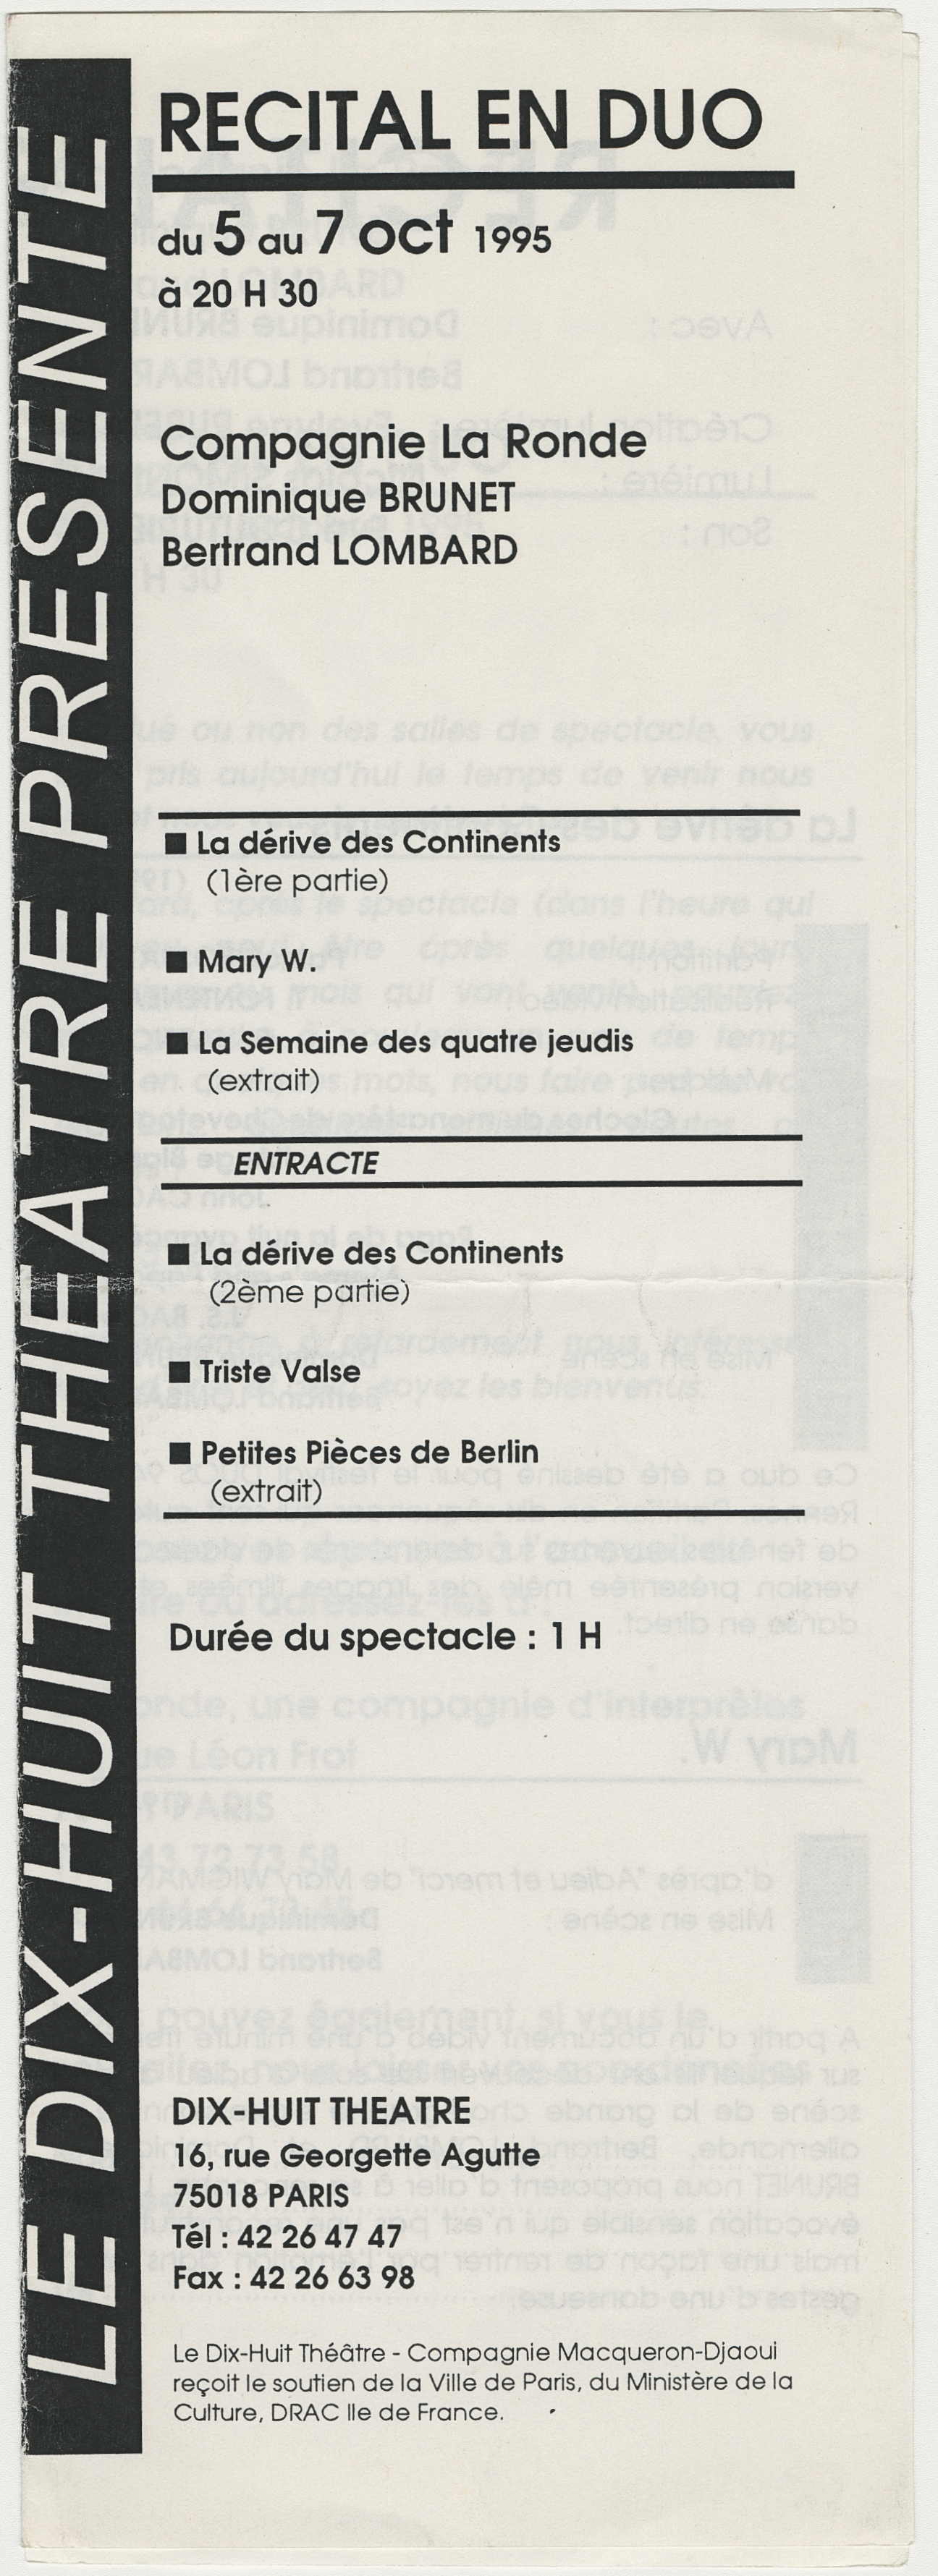 Feuille de salle du Dix-Huit Théâtre, octobre 1995 (4 p.)